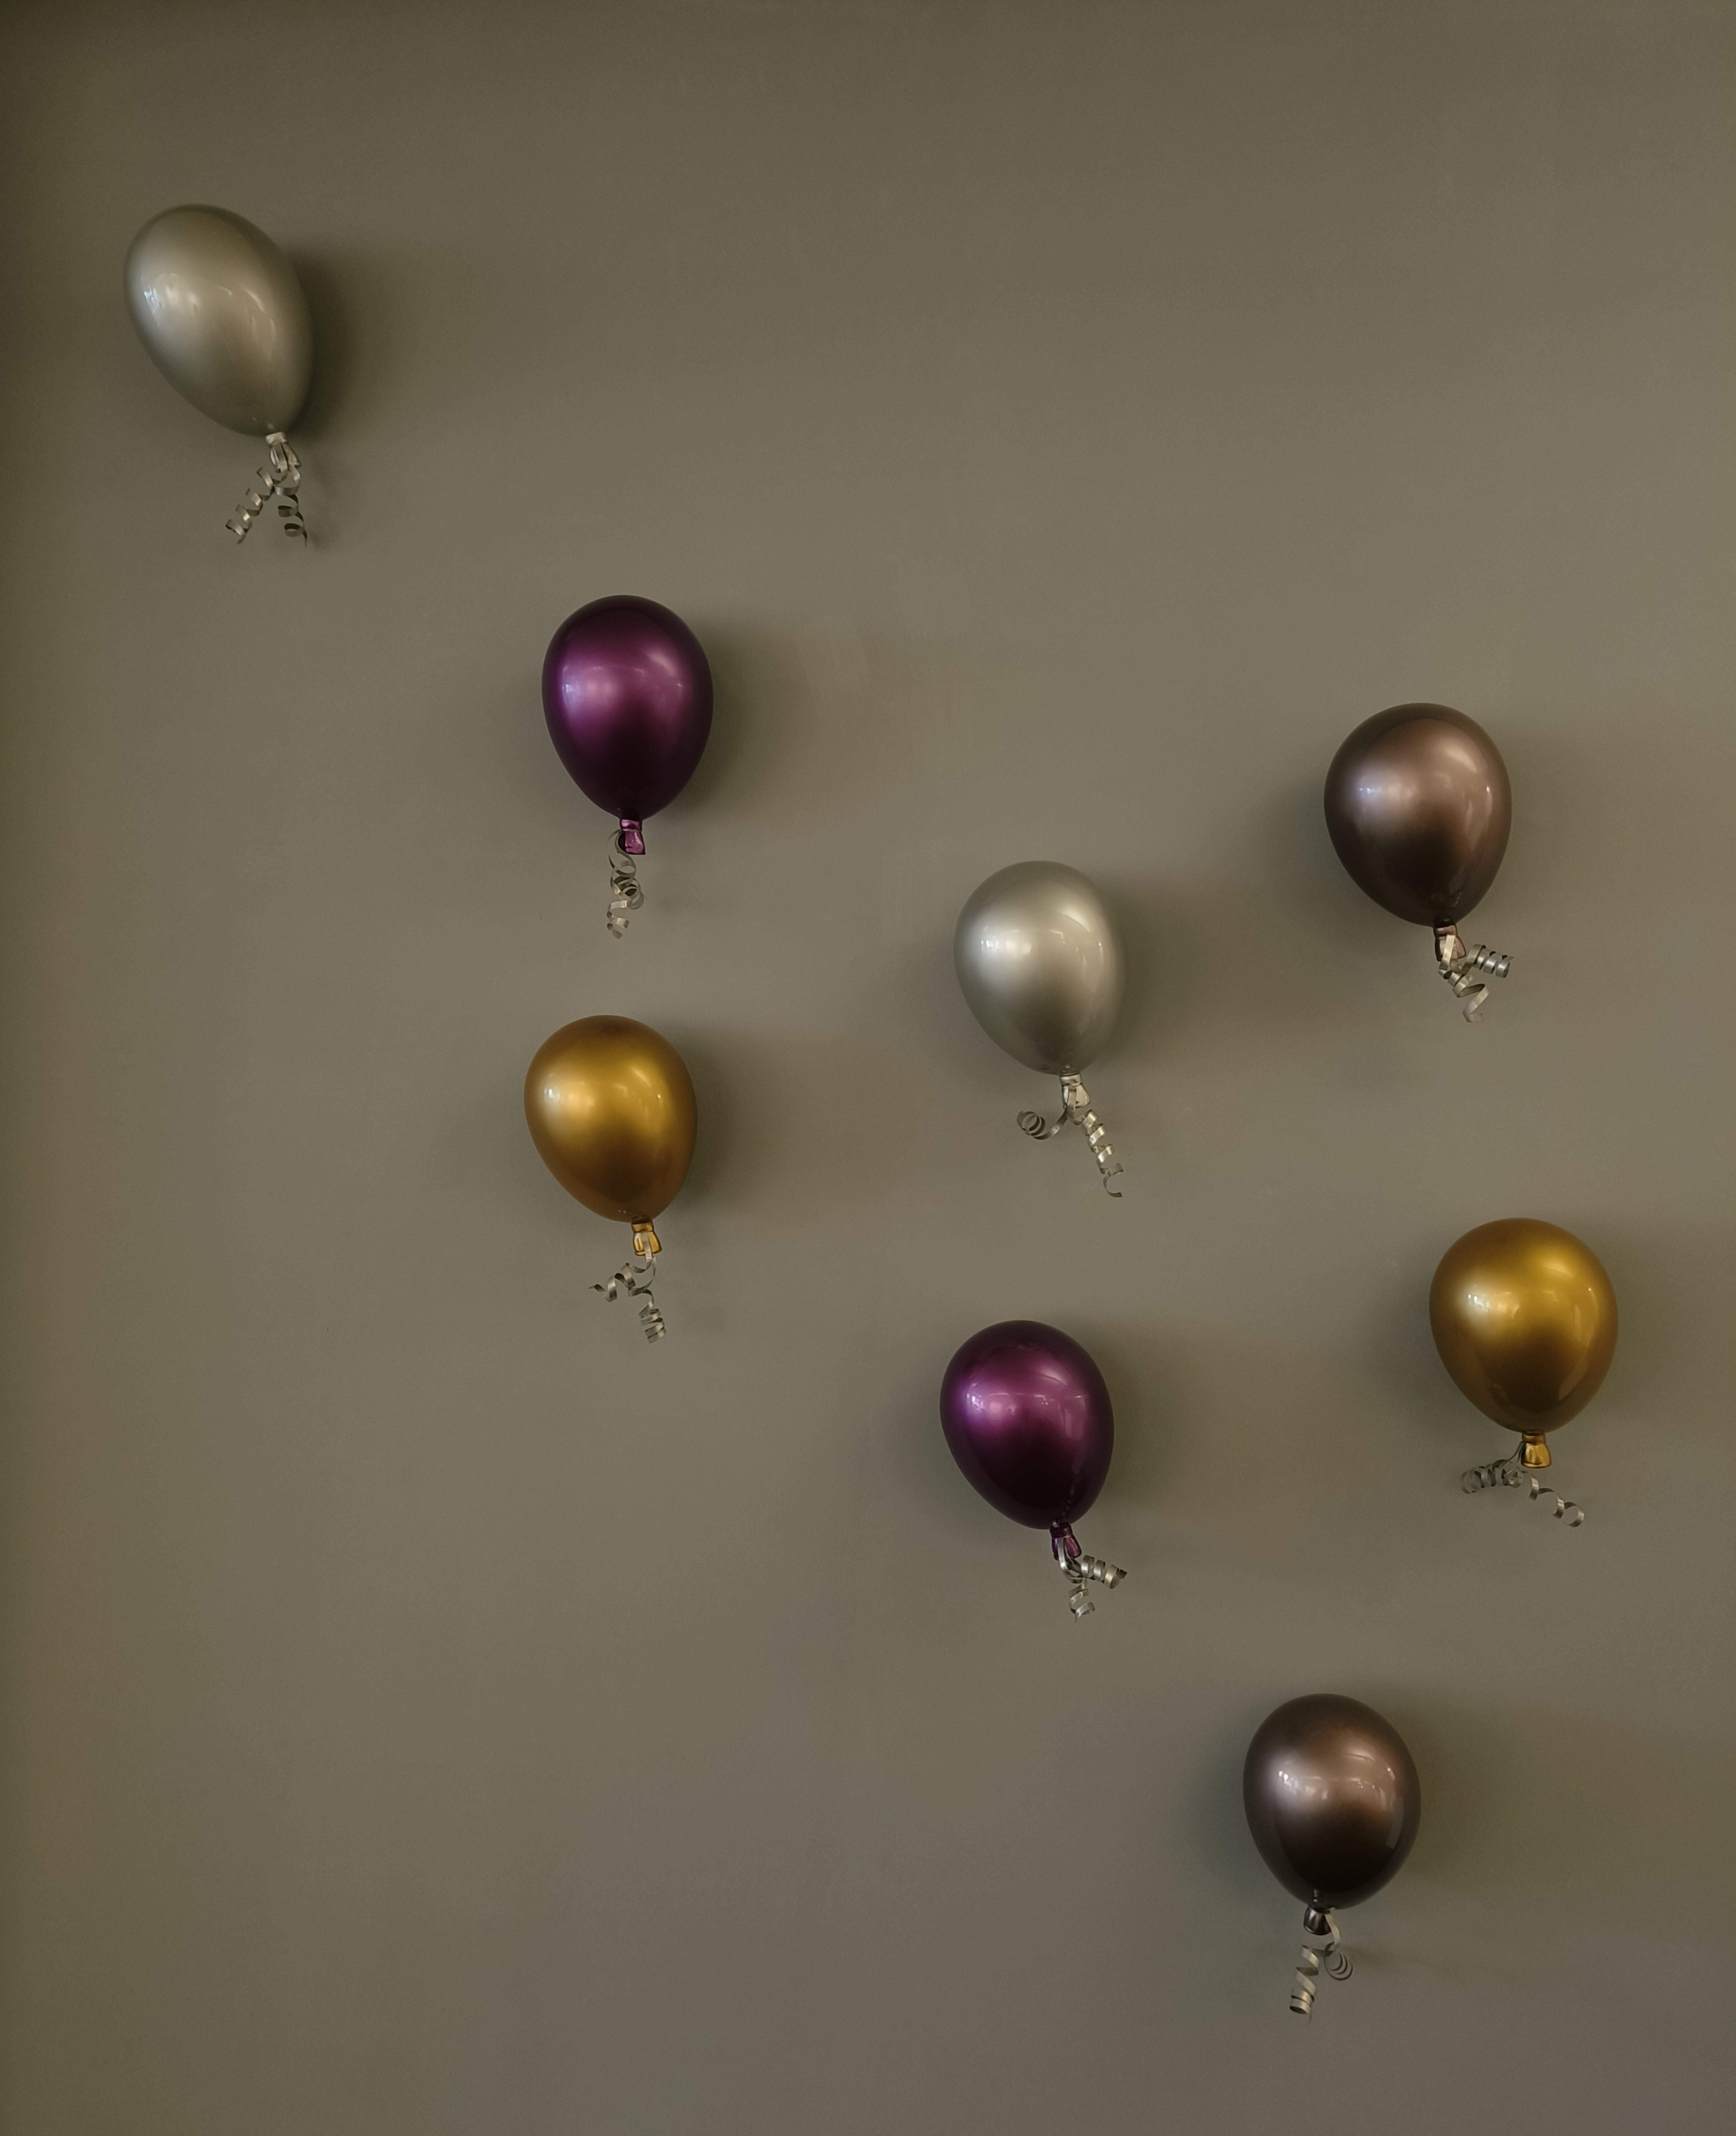 Wall mounted balloon installation 